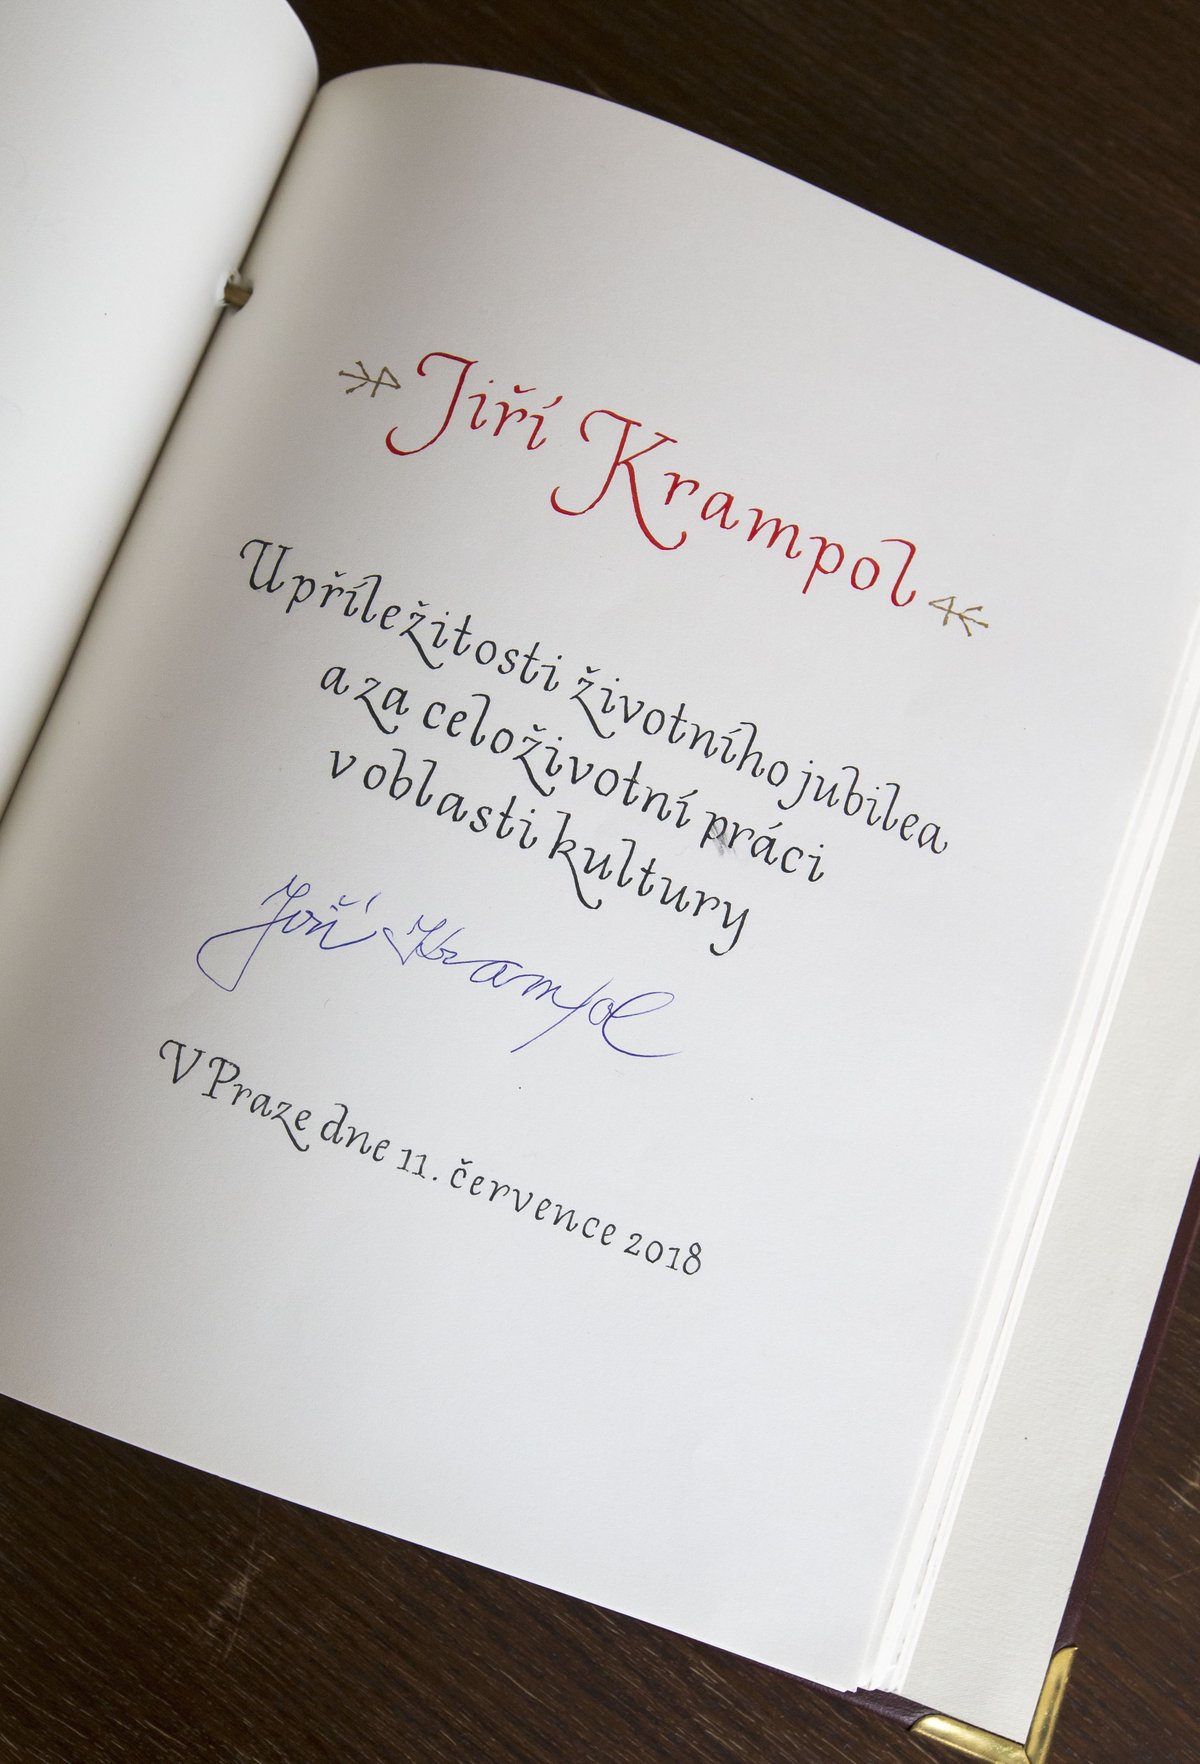 Od starosty Prahy 3 dostal knihu o Belmondovi